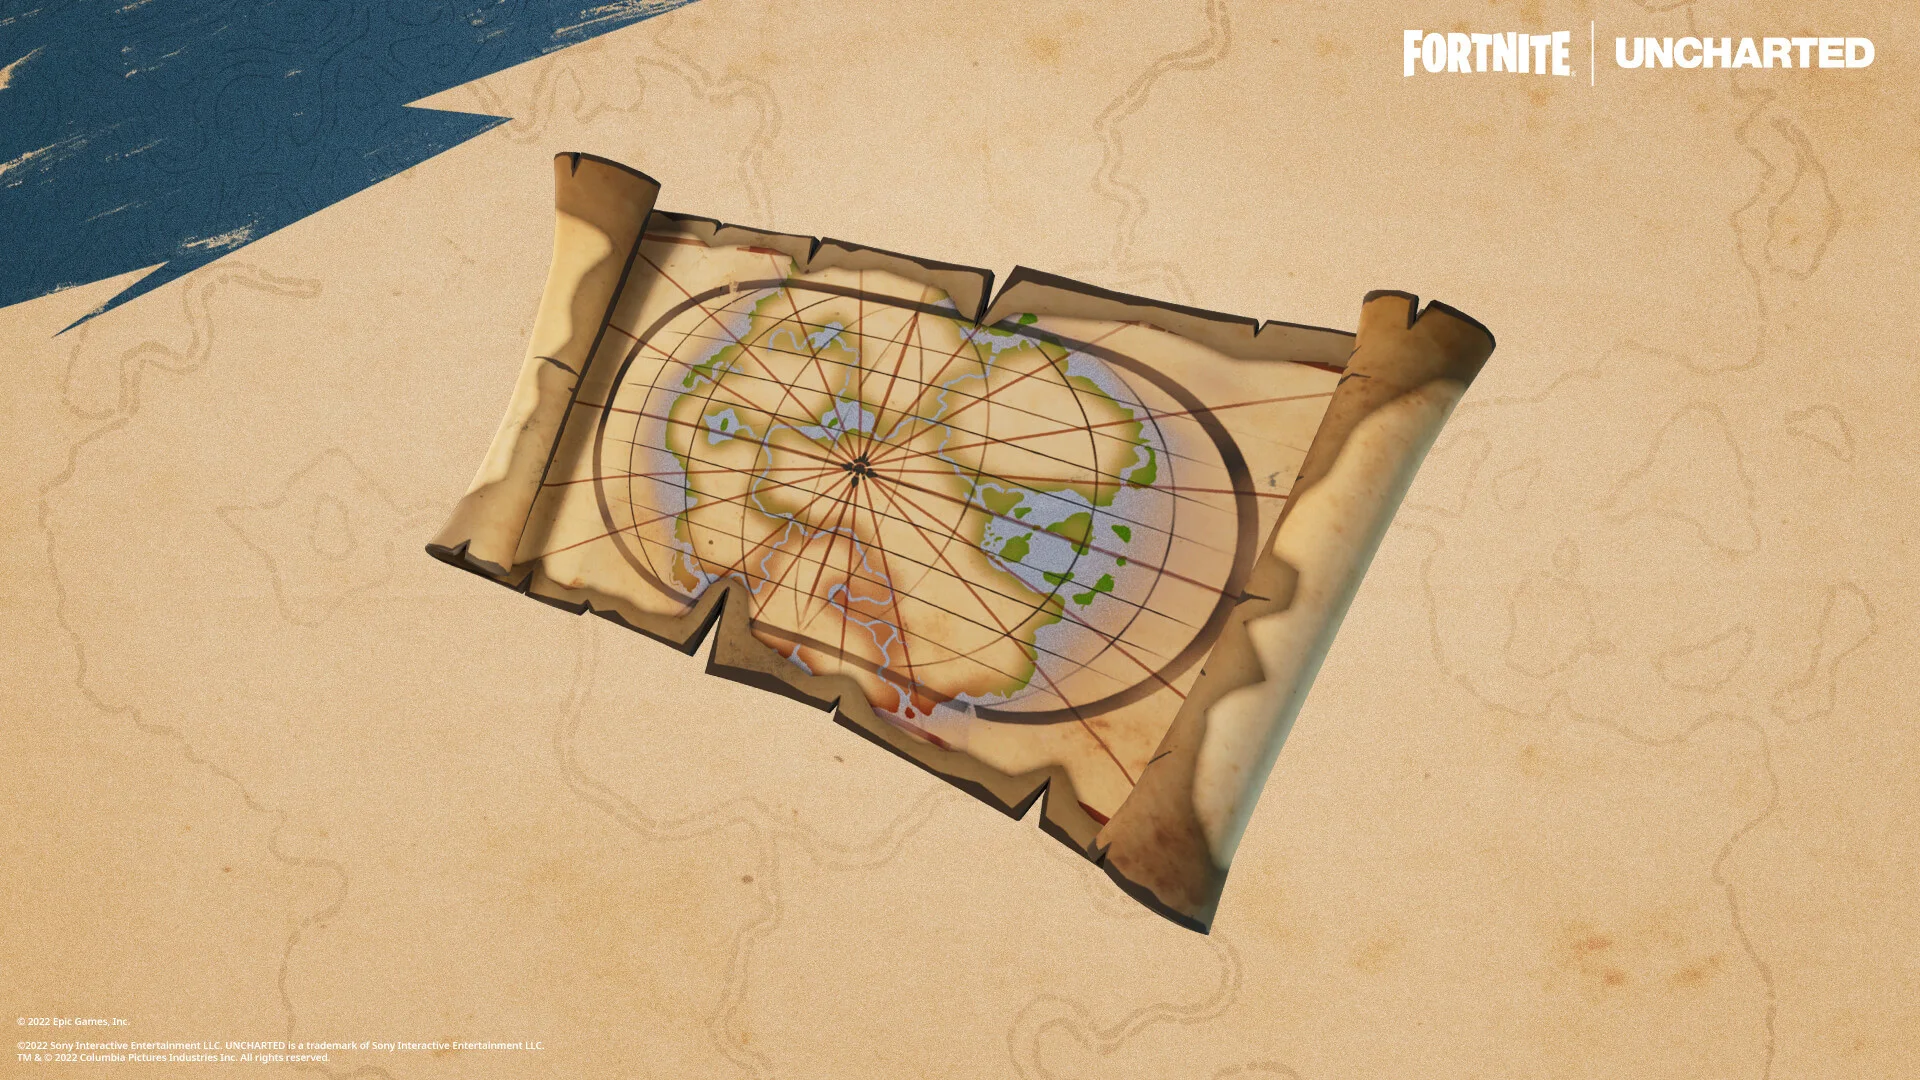 В Fortnite появились карты сокровищ Дрейка из Uncharted - фото 1